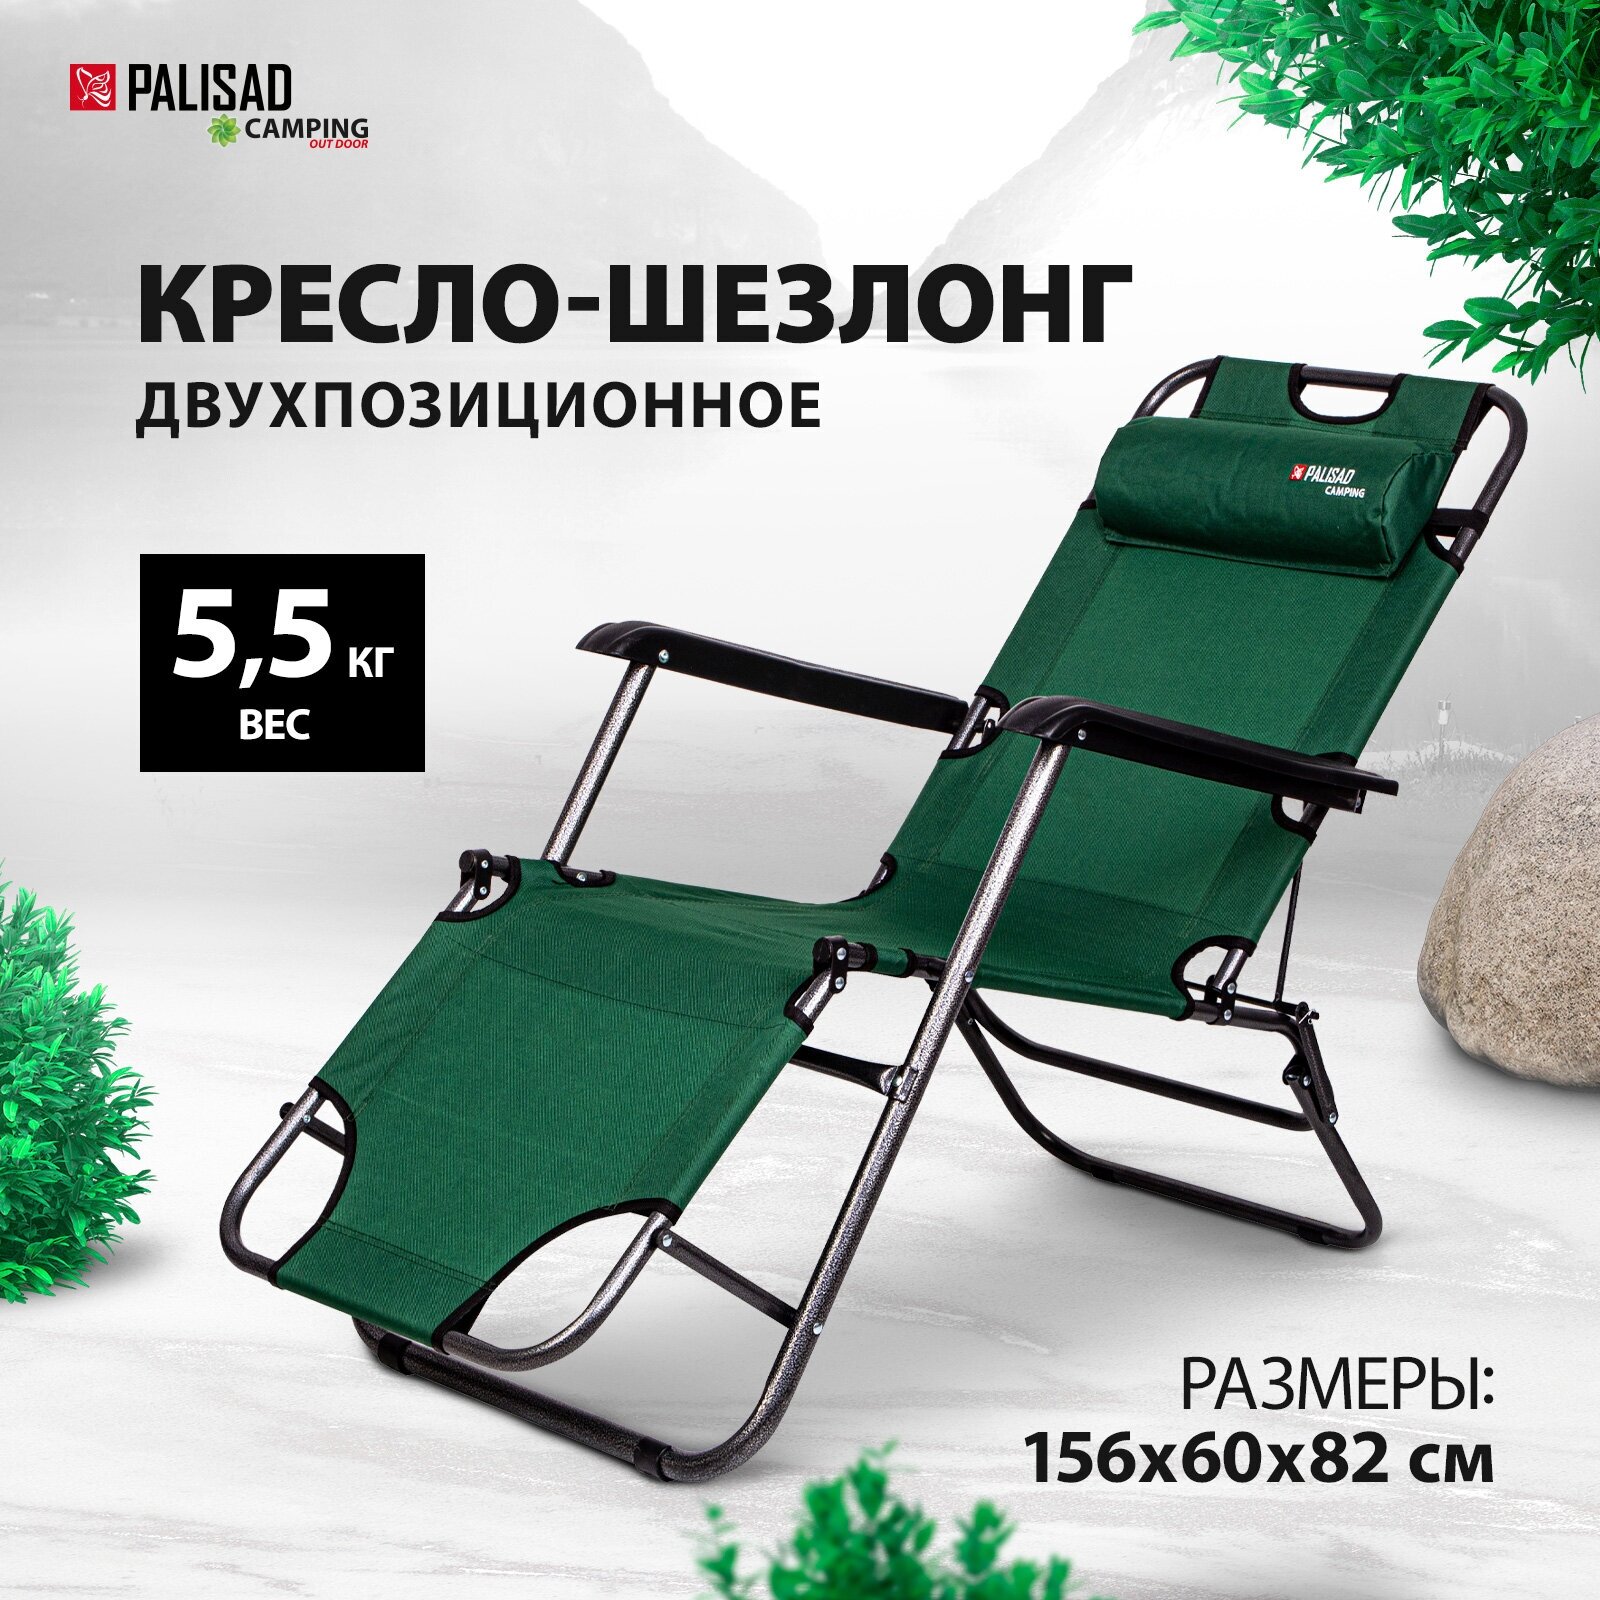 Кресло-шезлонг двух позиционное 156 х 60 х 82 см, Camping Palisad 69587